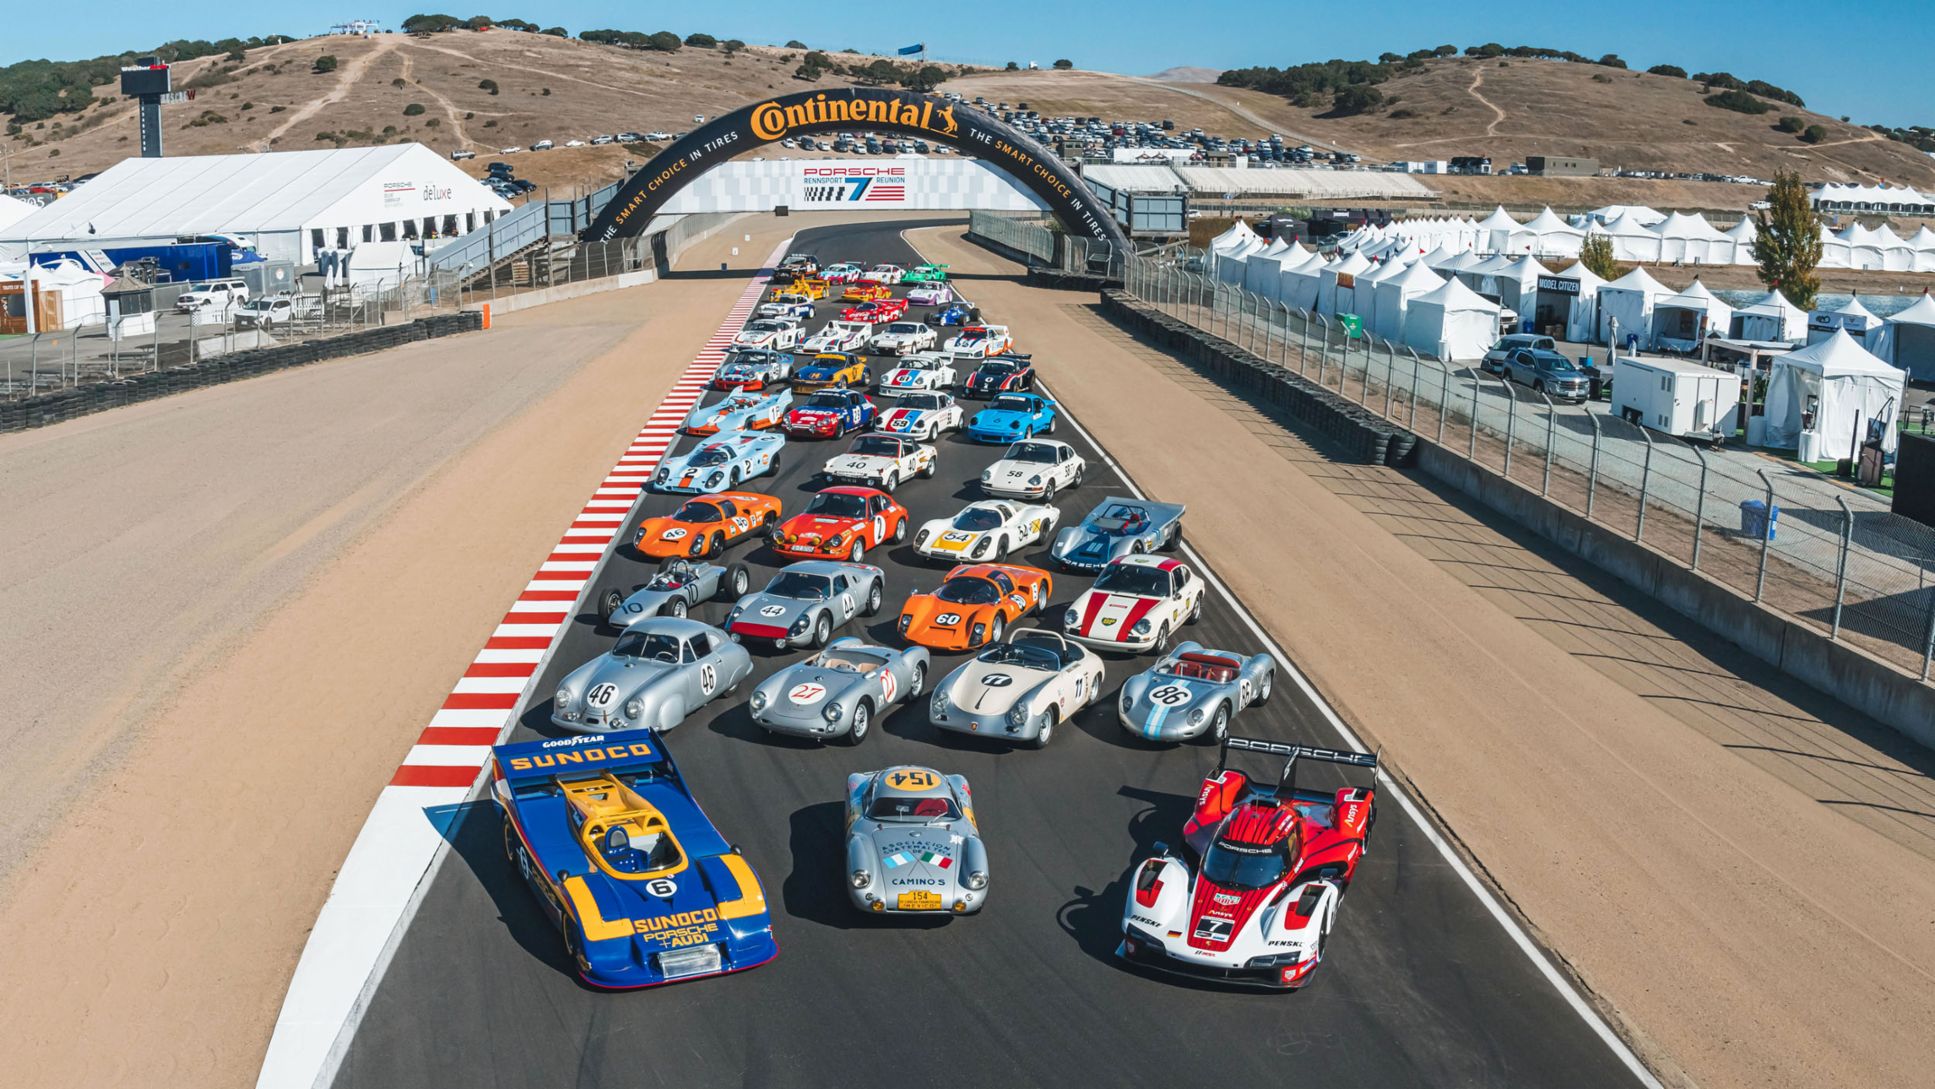 Thursday at the Rennsport Reunion 7: The biggest Porsche fan